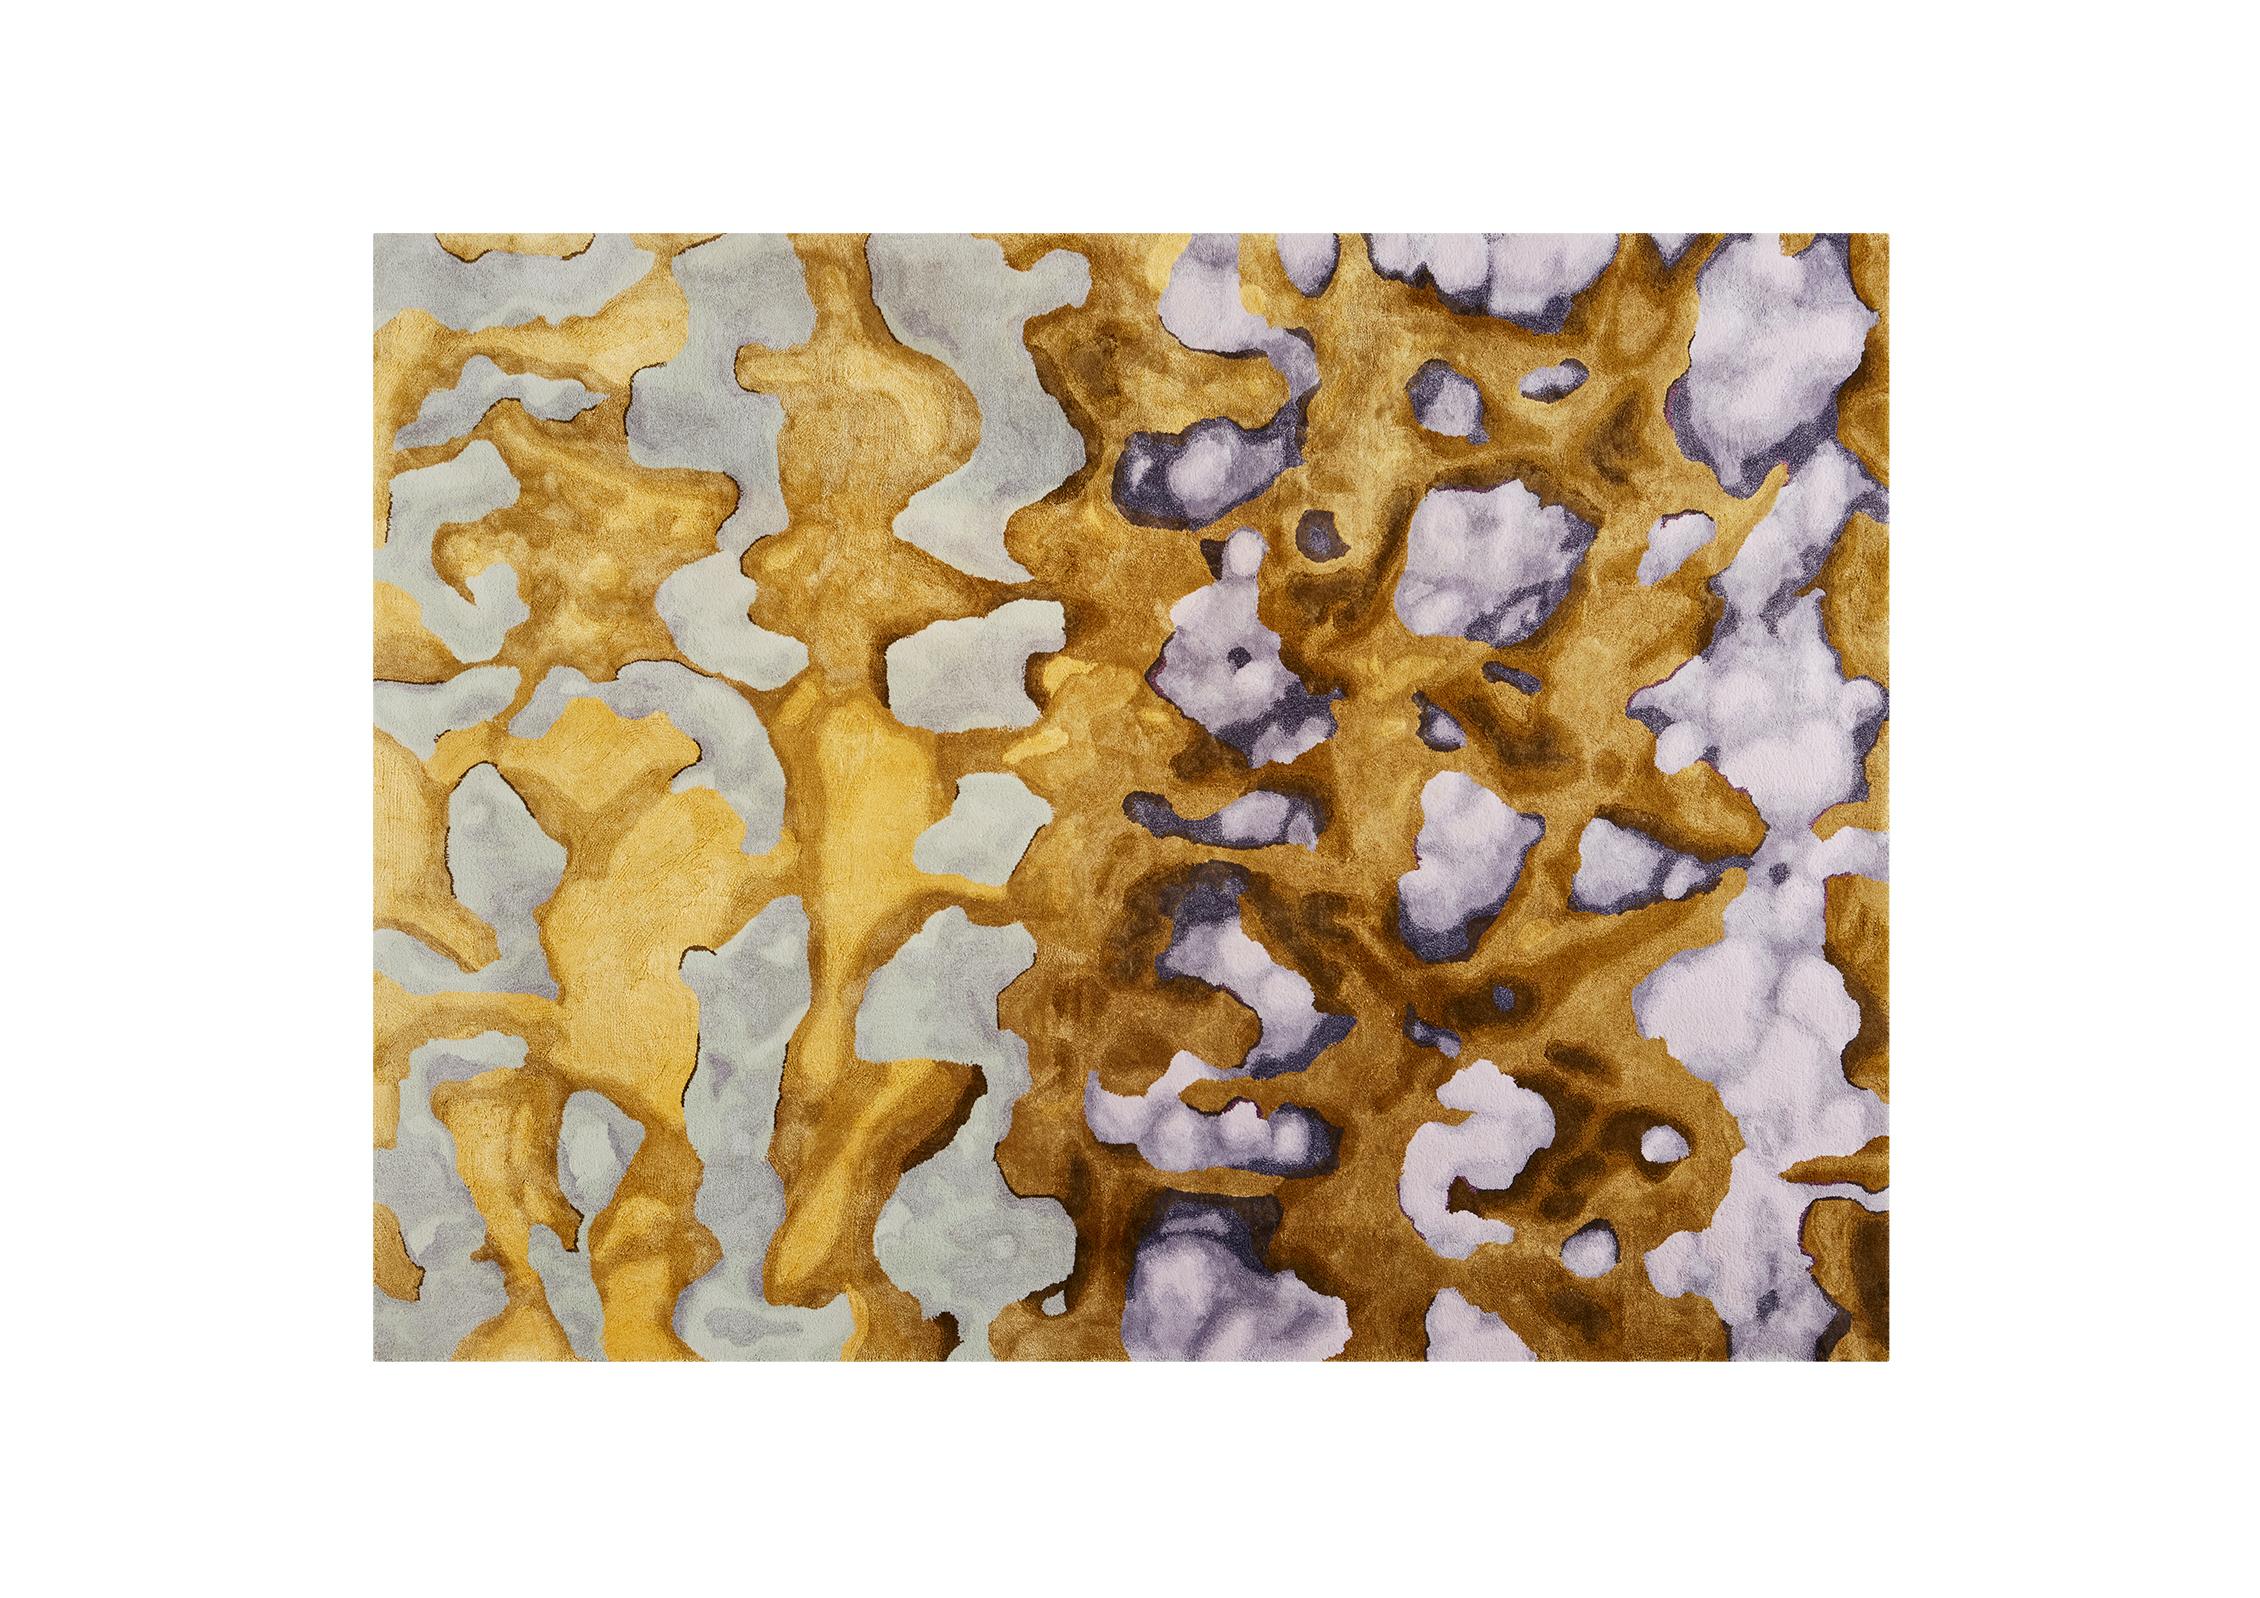 Lichens, Teppich von Ateliers Maison Pinton, nach einem Entwurf von Perrin&Perrin. Wolle, Seide, Baumwolle und Bambus. H 180 x L 250 cm / H 70,8 x B 98,4 in. Limitierte Auflage von 6 Stück

Seit über 150 Jahren setzt Pinton das Know-how der